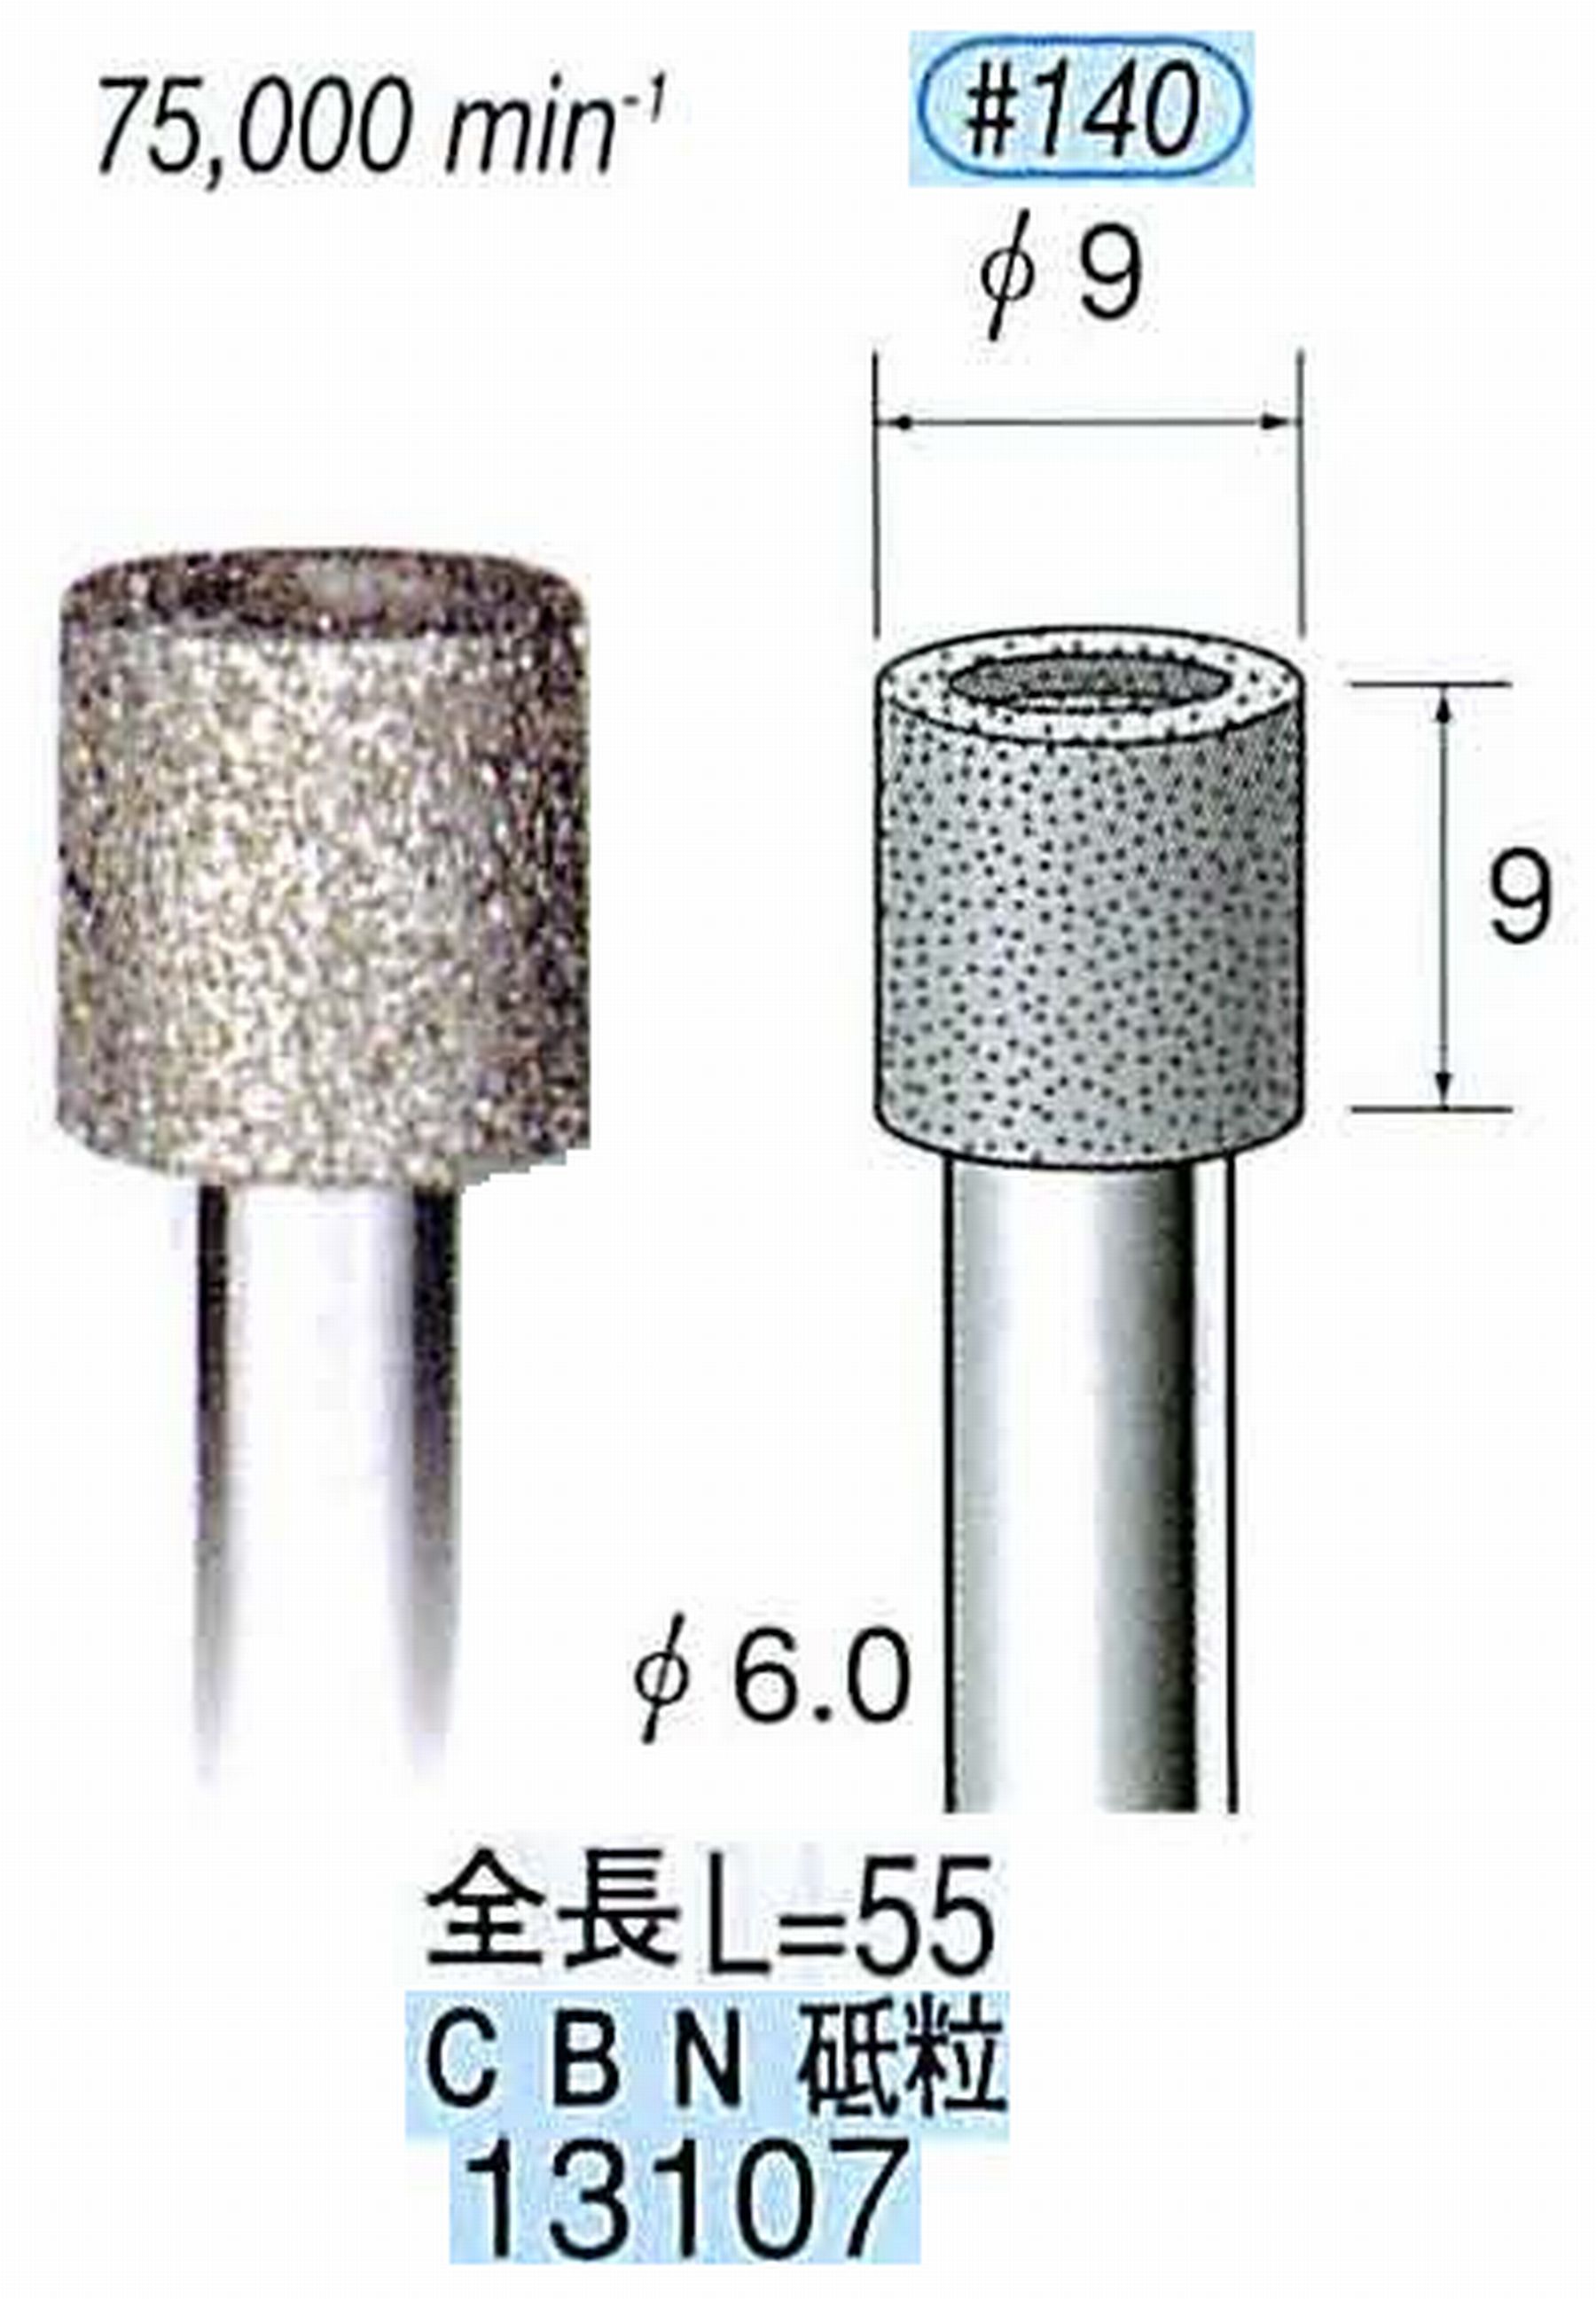 ナカニシ/NAKANISHI 電着CBNバー CBN砥粒 軸径(シャンク)φ6.0mm 13107